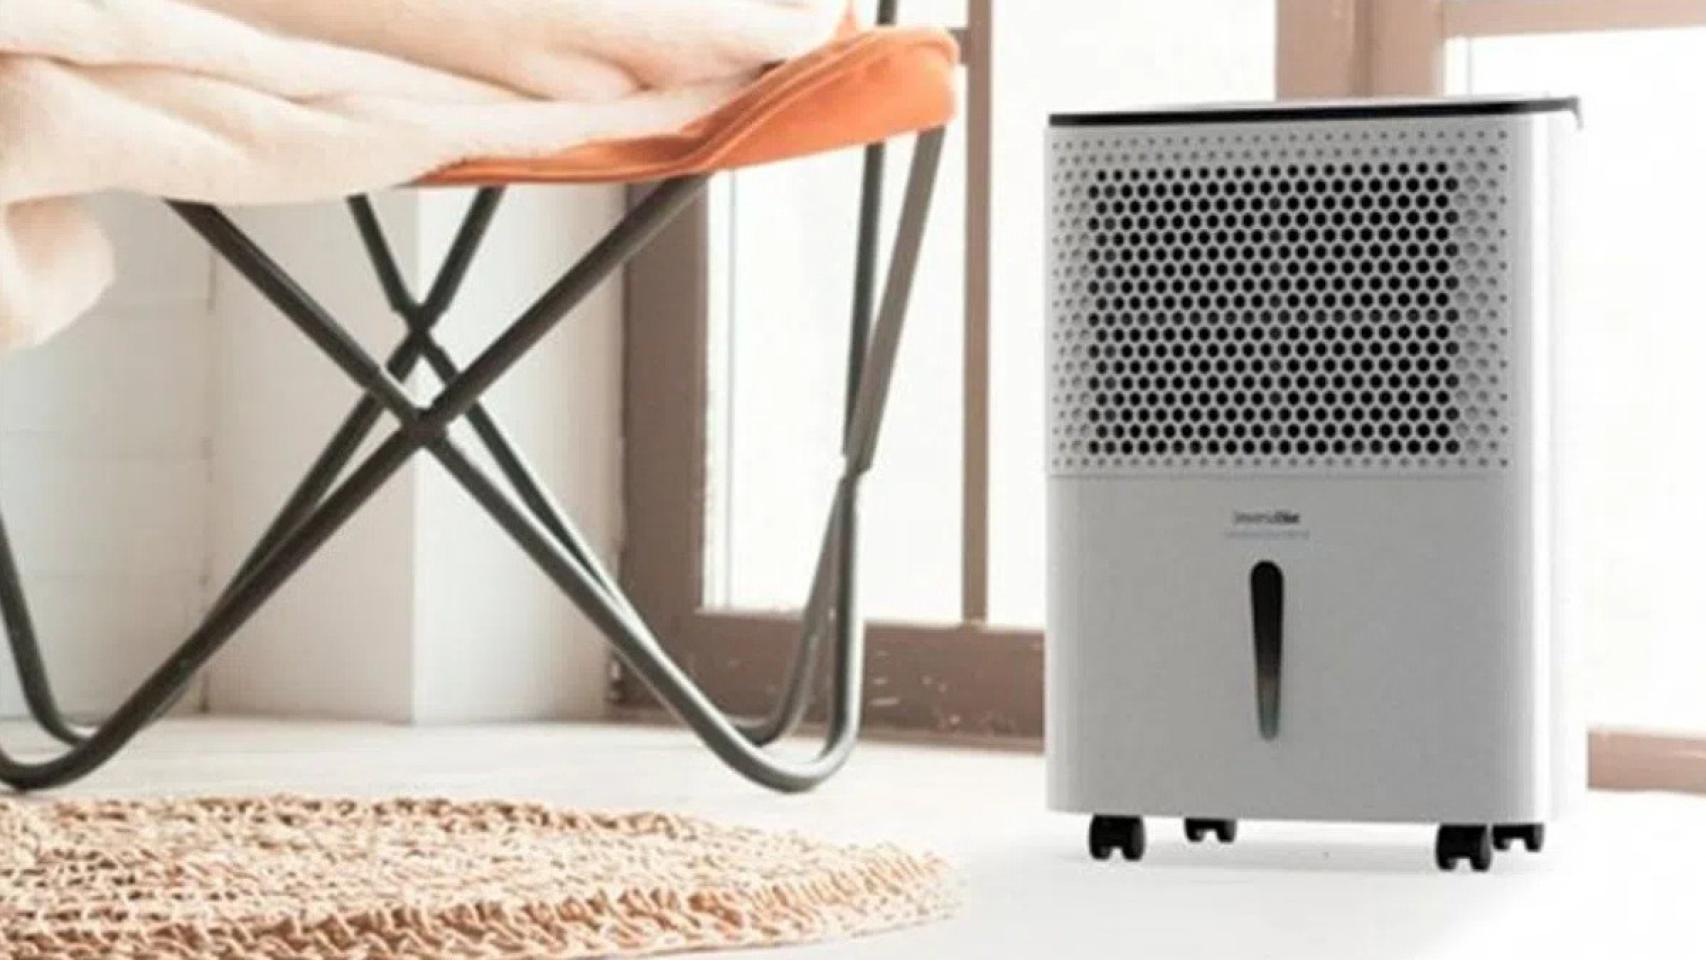 Respira aire de calidad en tu hogar con este deshumidificador: ahora con un 31% de descuento